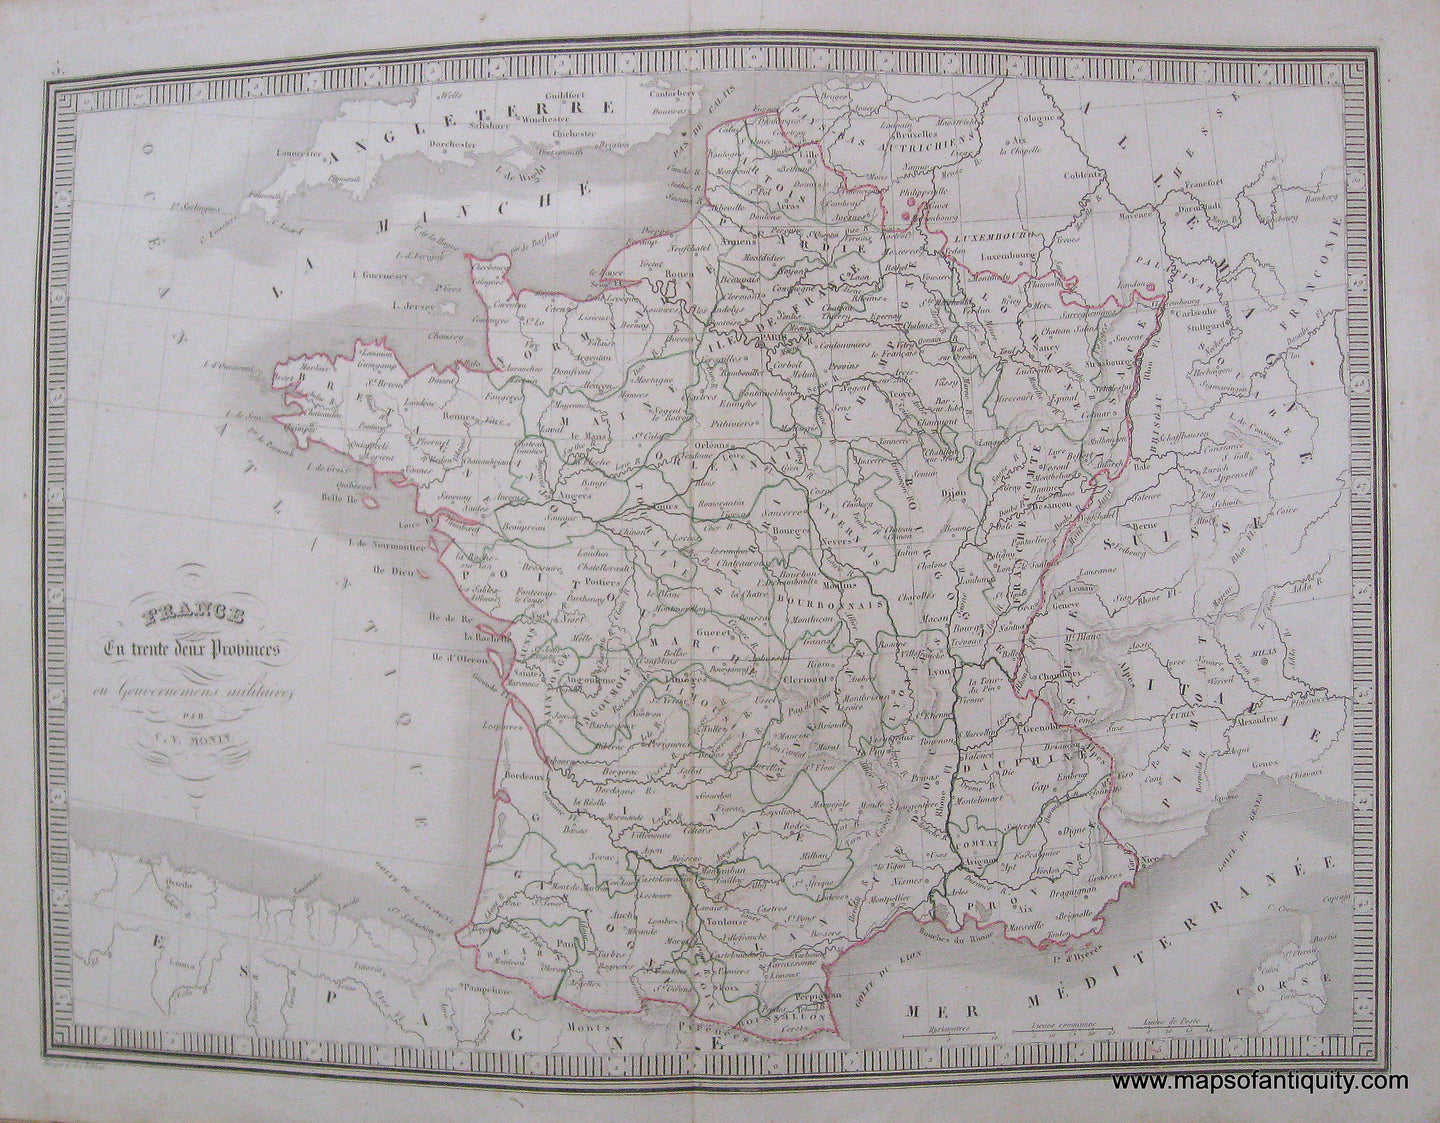 Antique-Hand-Colored-Map-France-en-deuex-Provinces-1846-Monin-France-1800s-19th-century-Maps-of-Antiquity